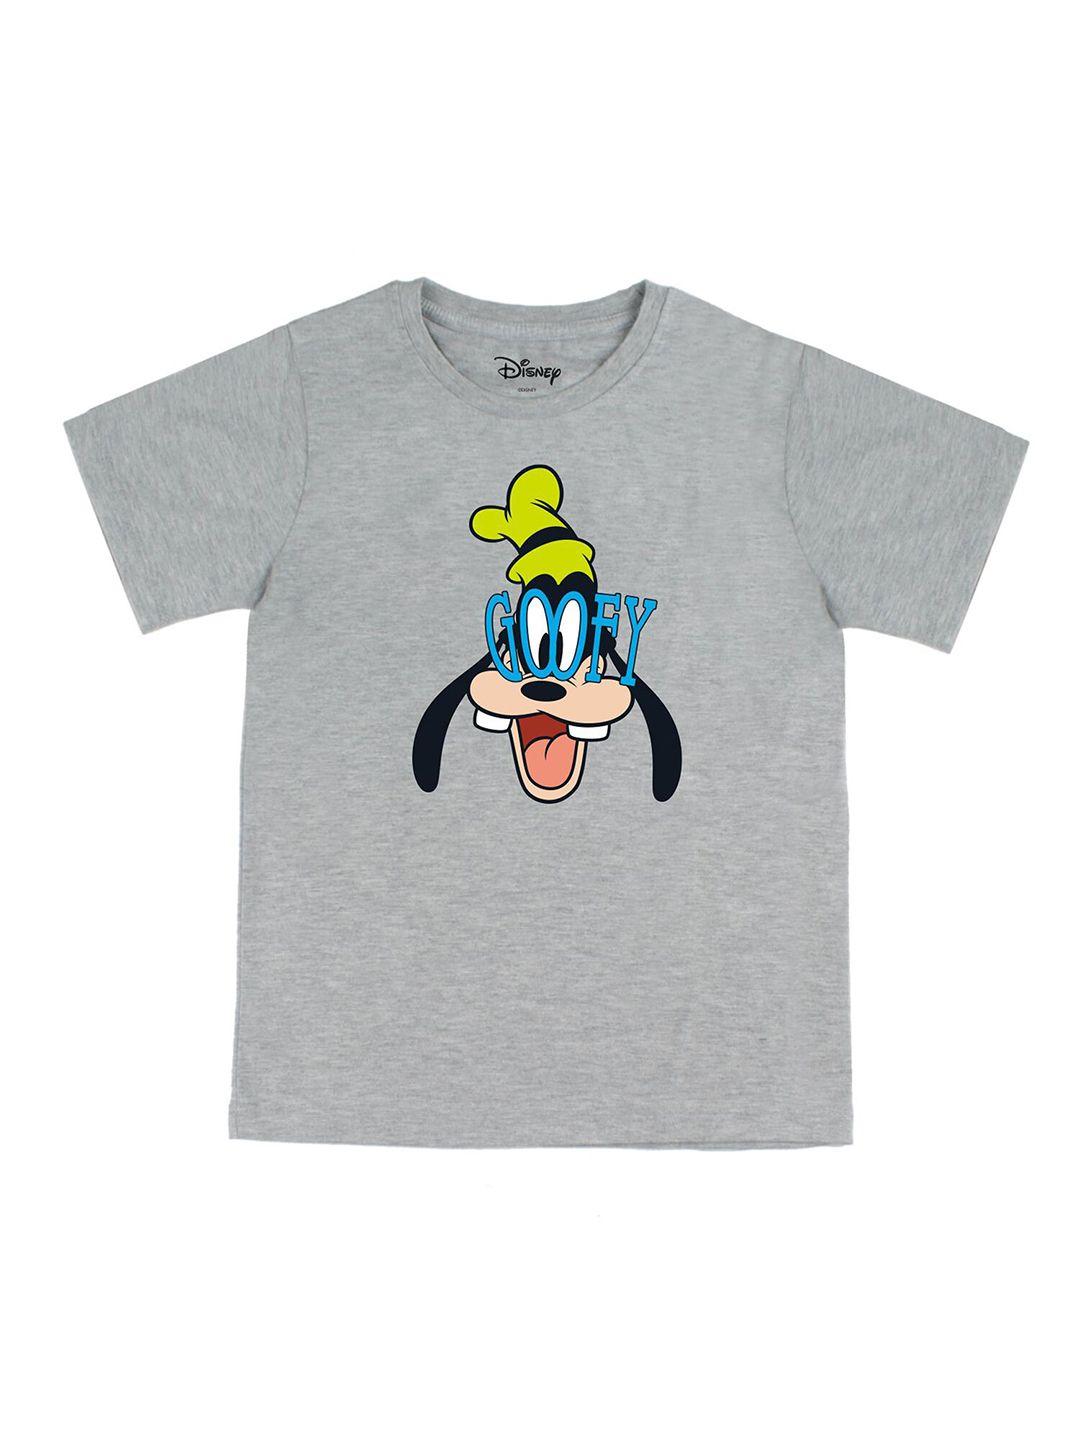 disney by wear your mind boys grey goofy printed t-shirt